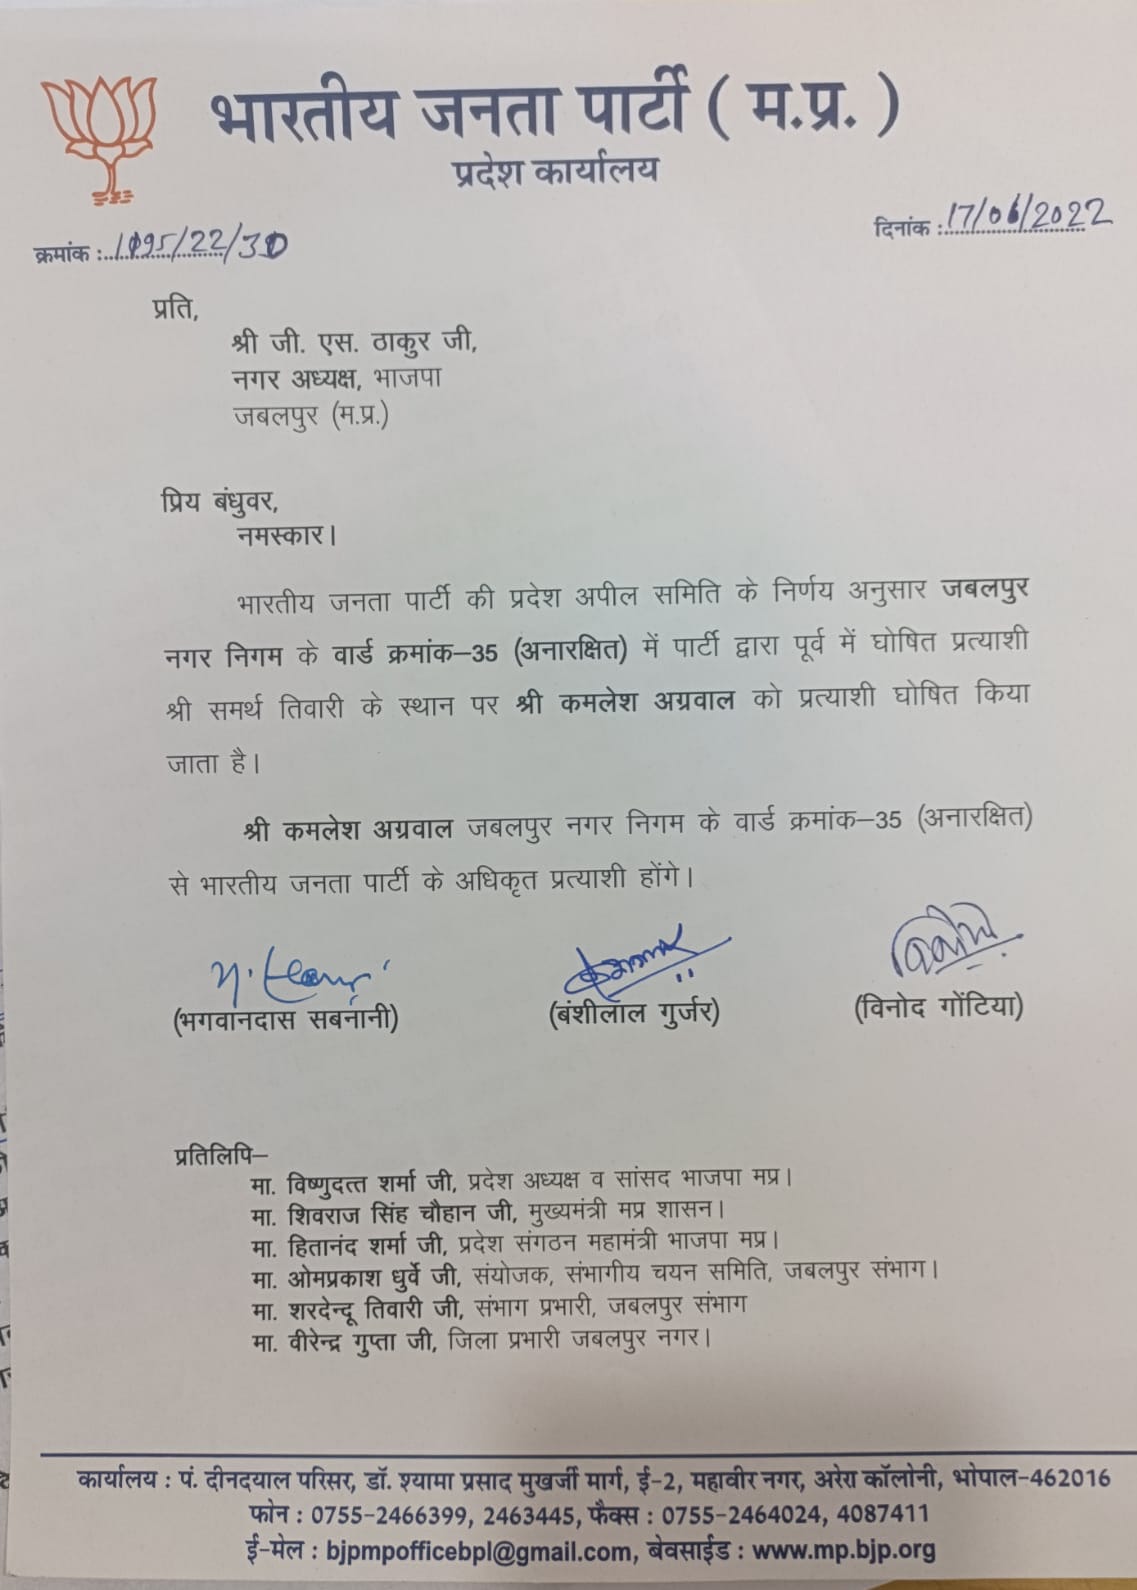 जबलपुर : बीजेपी की पार्षद उम्मीदवारों की सूची जारी, थोड़ी देर बाद किया फेरबदल